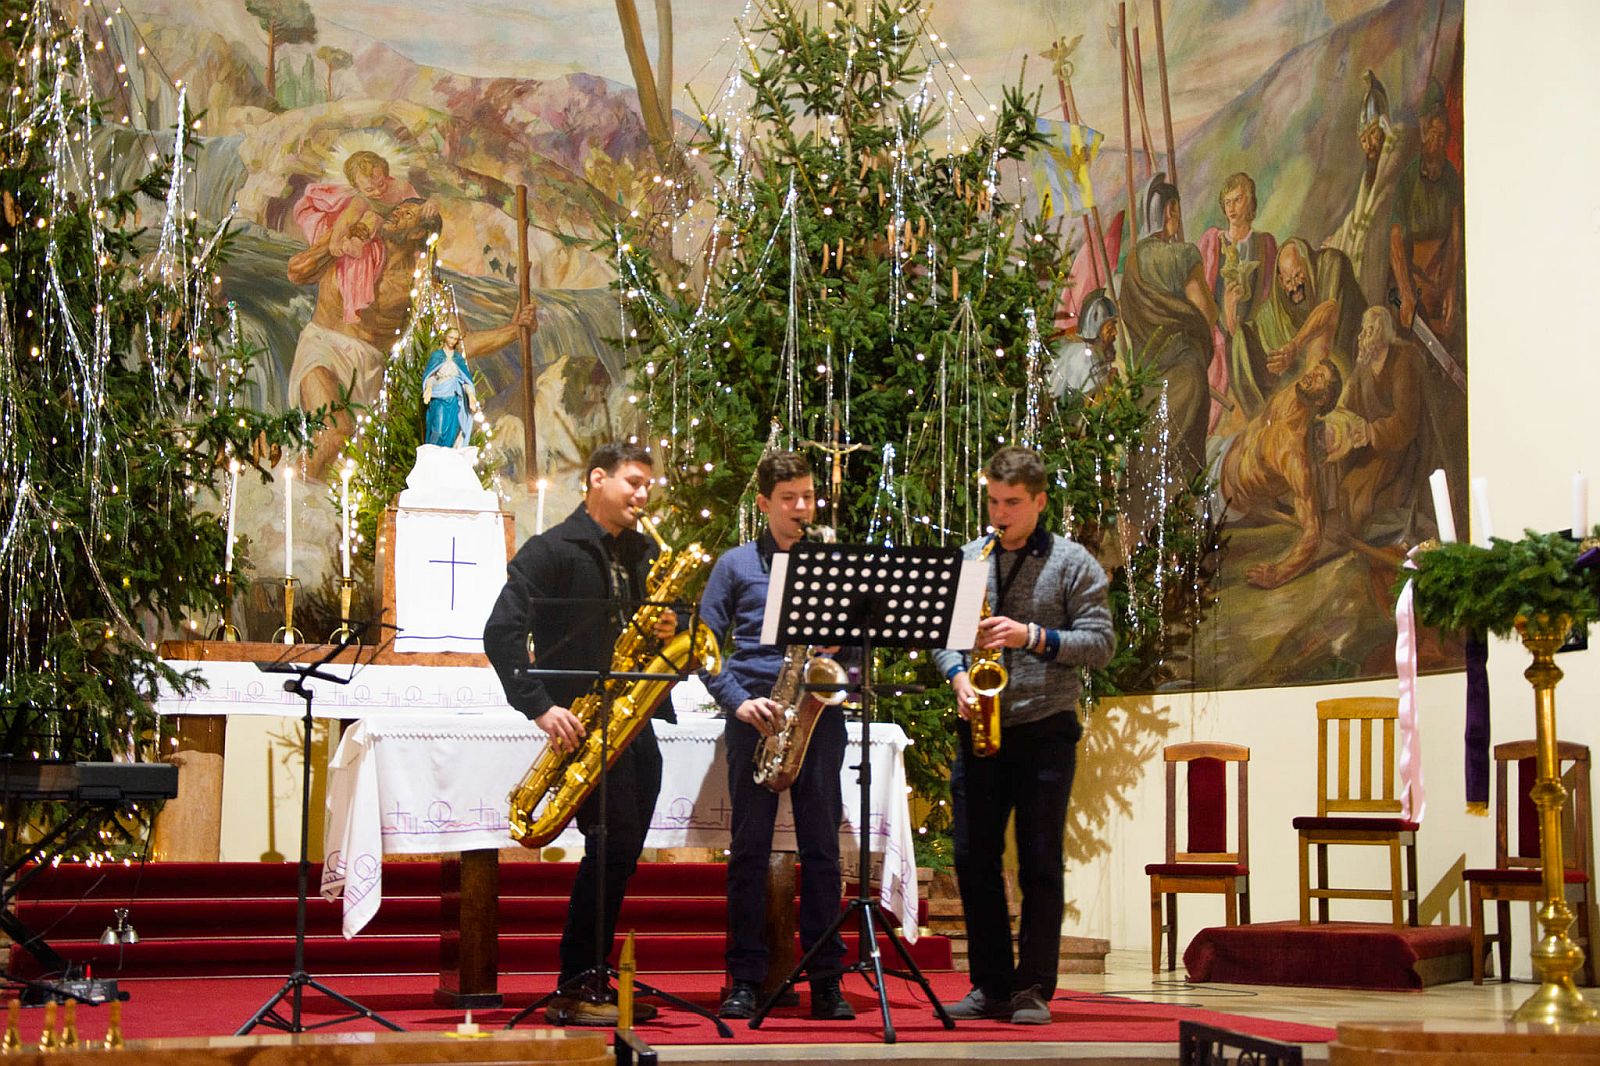 Jótékonysági Fafúvós Karácsonyi Koncert lesz a sörédi táborért a Szent Kristóf templomban